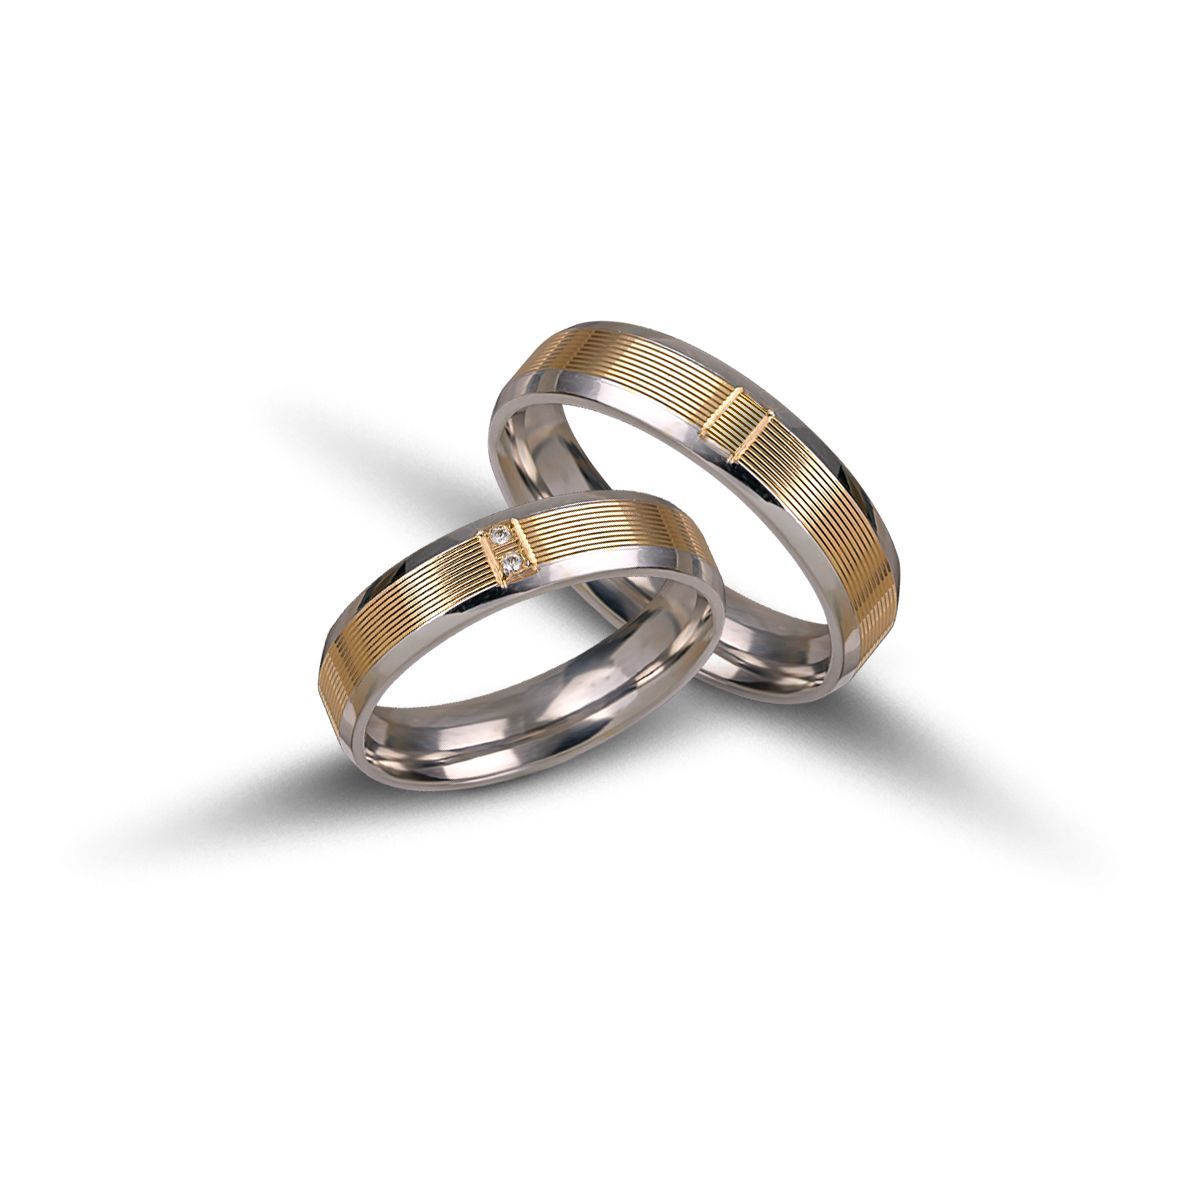 White gold & gold wedding rings 5mm  (code VK2019/50)